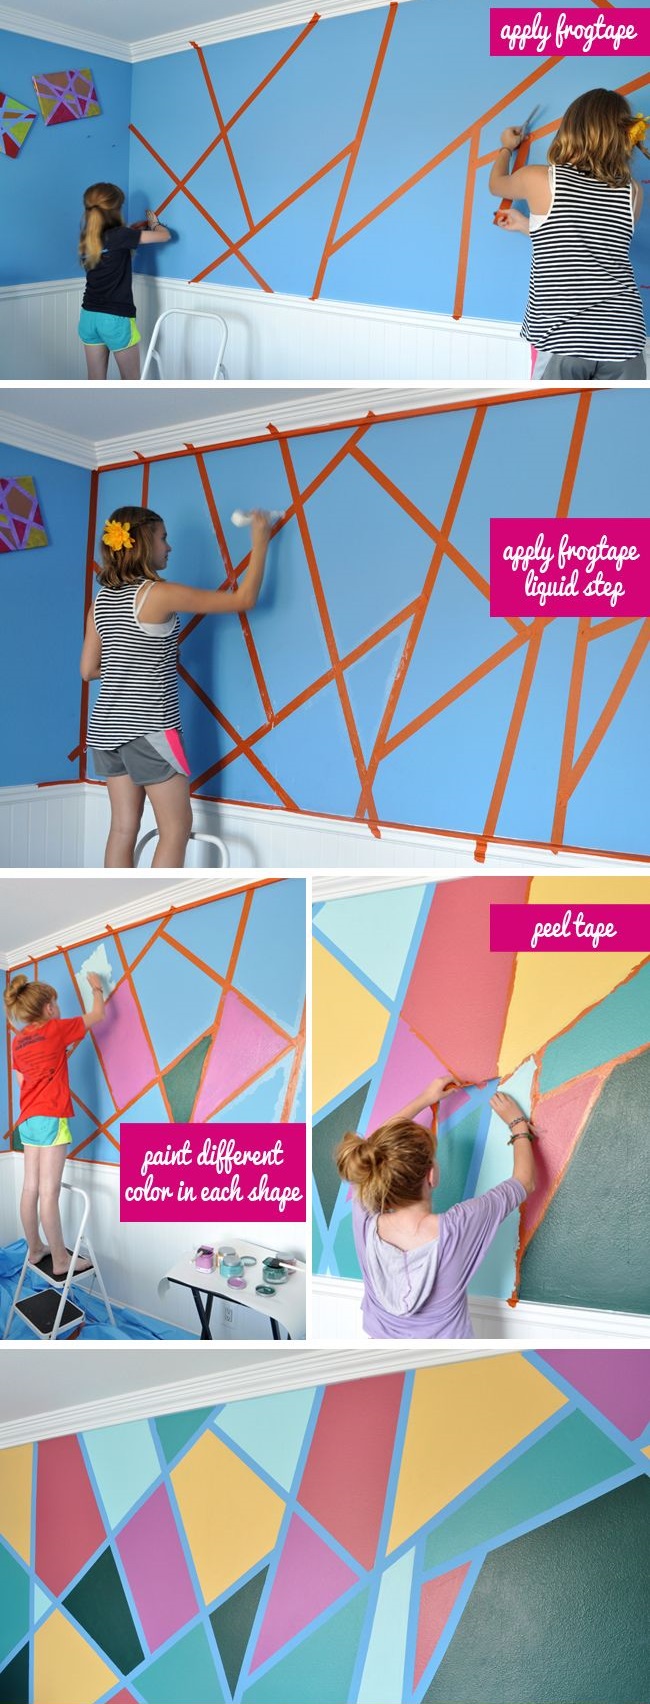 decoracion-para-paredes-10-formas-de-darle-un-toque-glam-1X